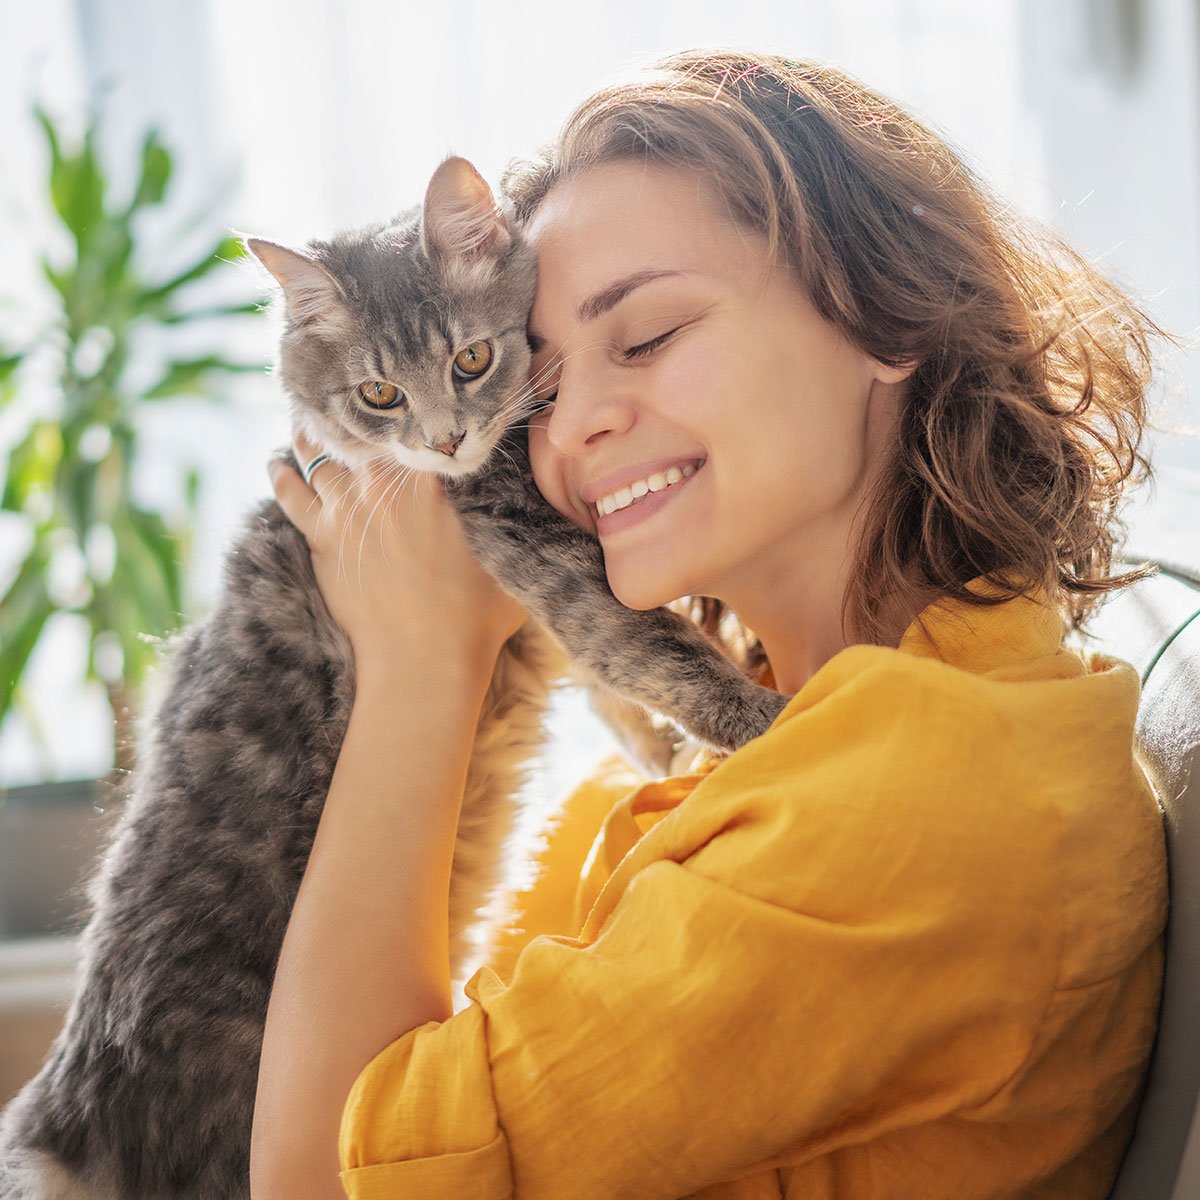 En smilende kvinde i en gul skjorte holder en kat i sine arme